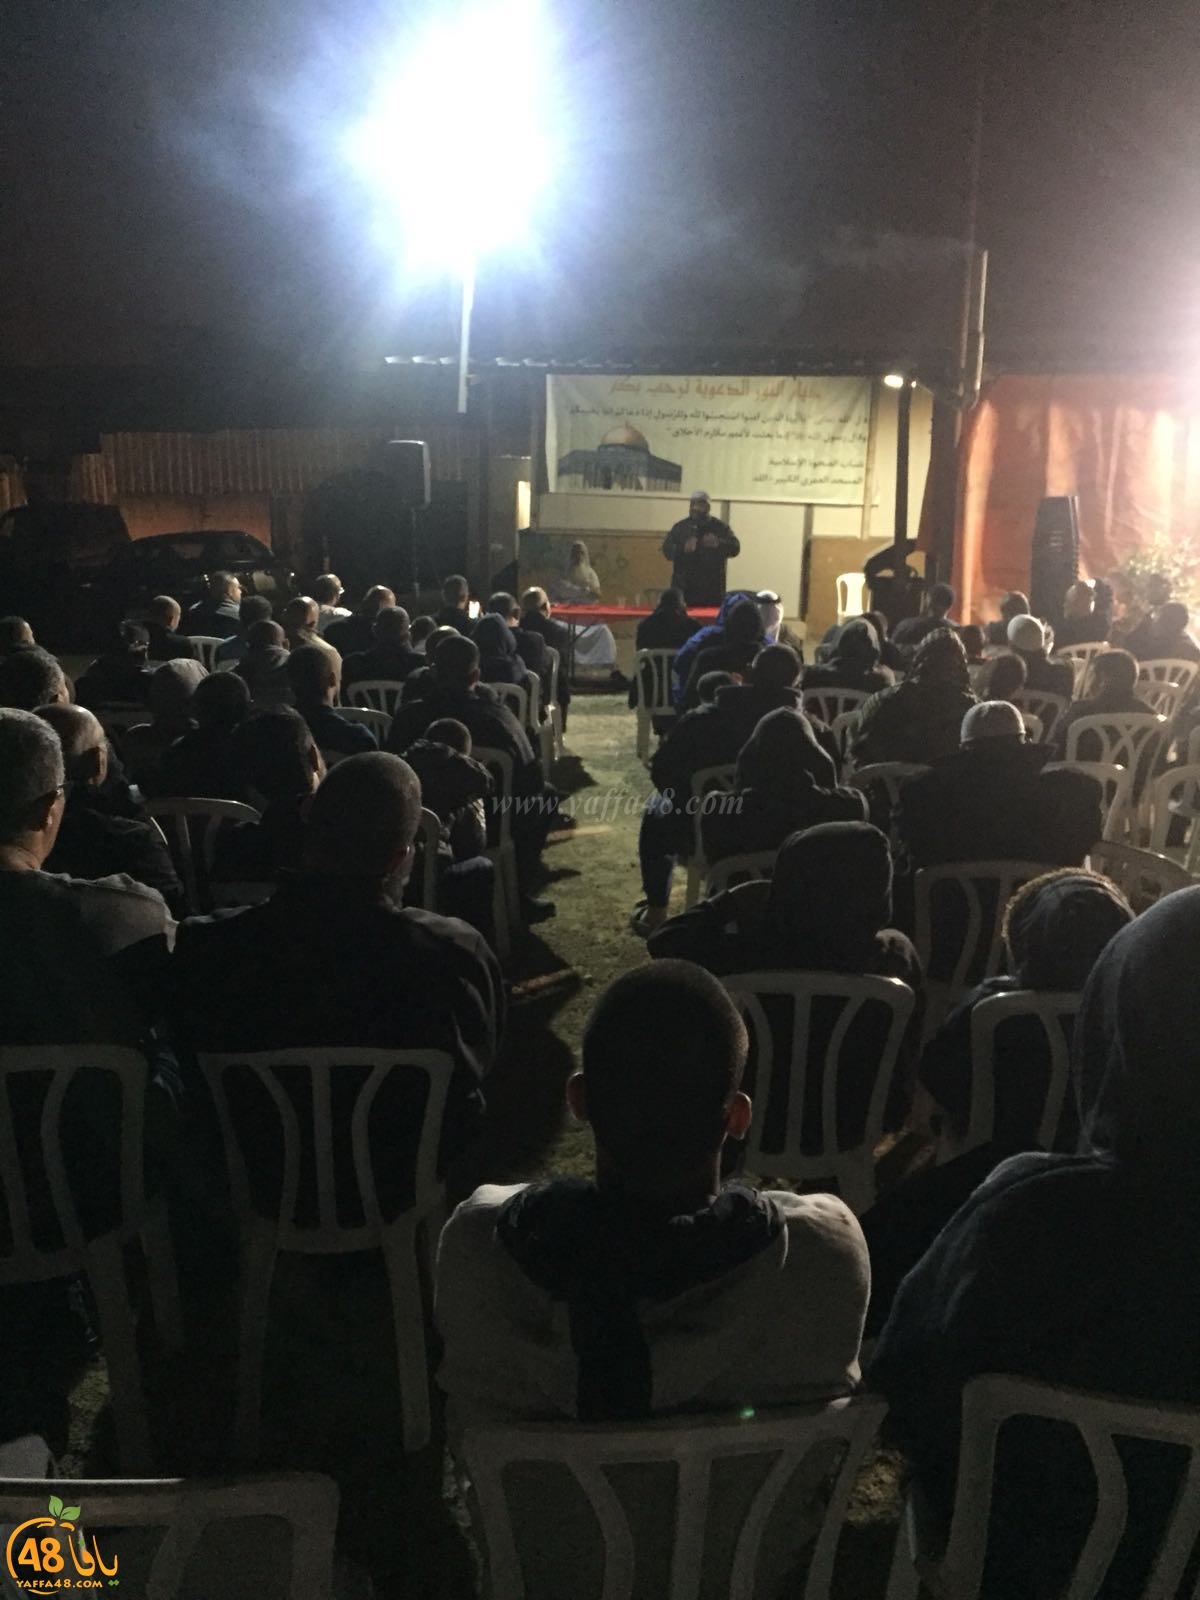 اللد: لجنة نشر الدعوة تختم سلسلة خيام النور لشهر آذار بأمسية ايمانية في حي شنير